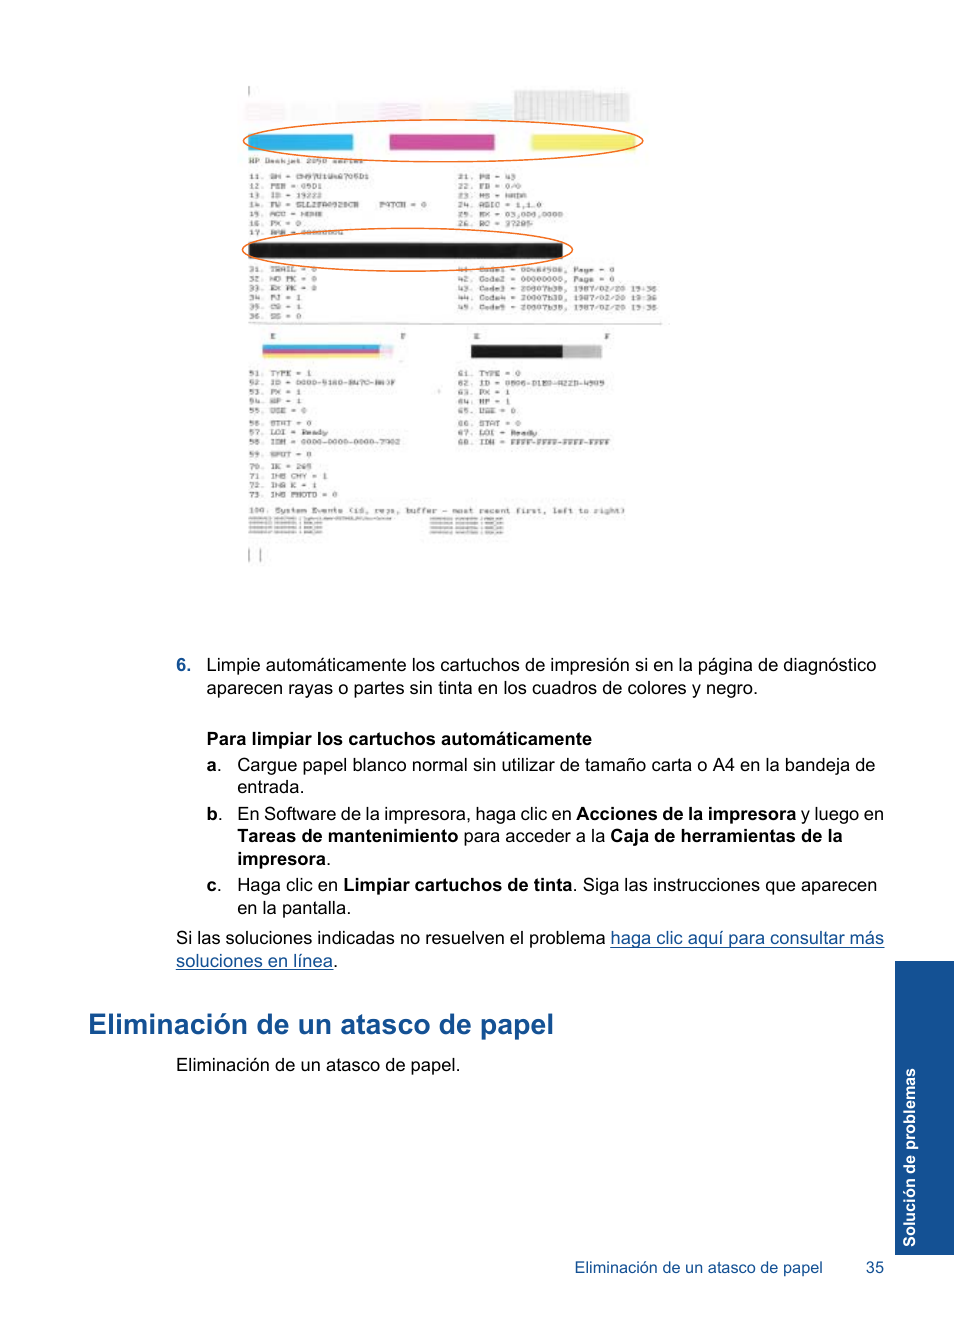 Eliminación de un atasco de papel, Pulse | HP Deskjet 2050 Manual del usuario | Página 37 / 56